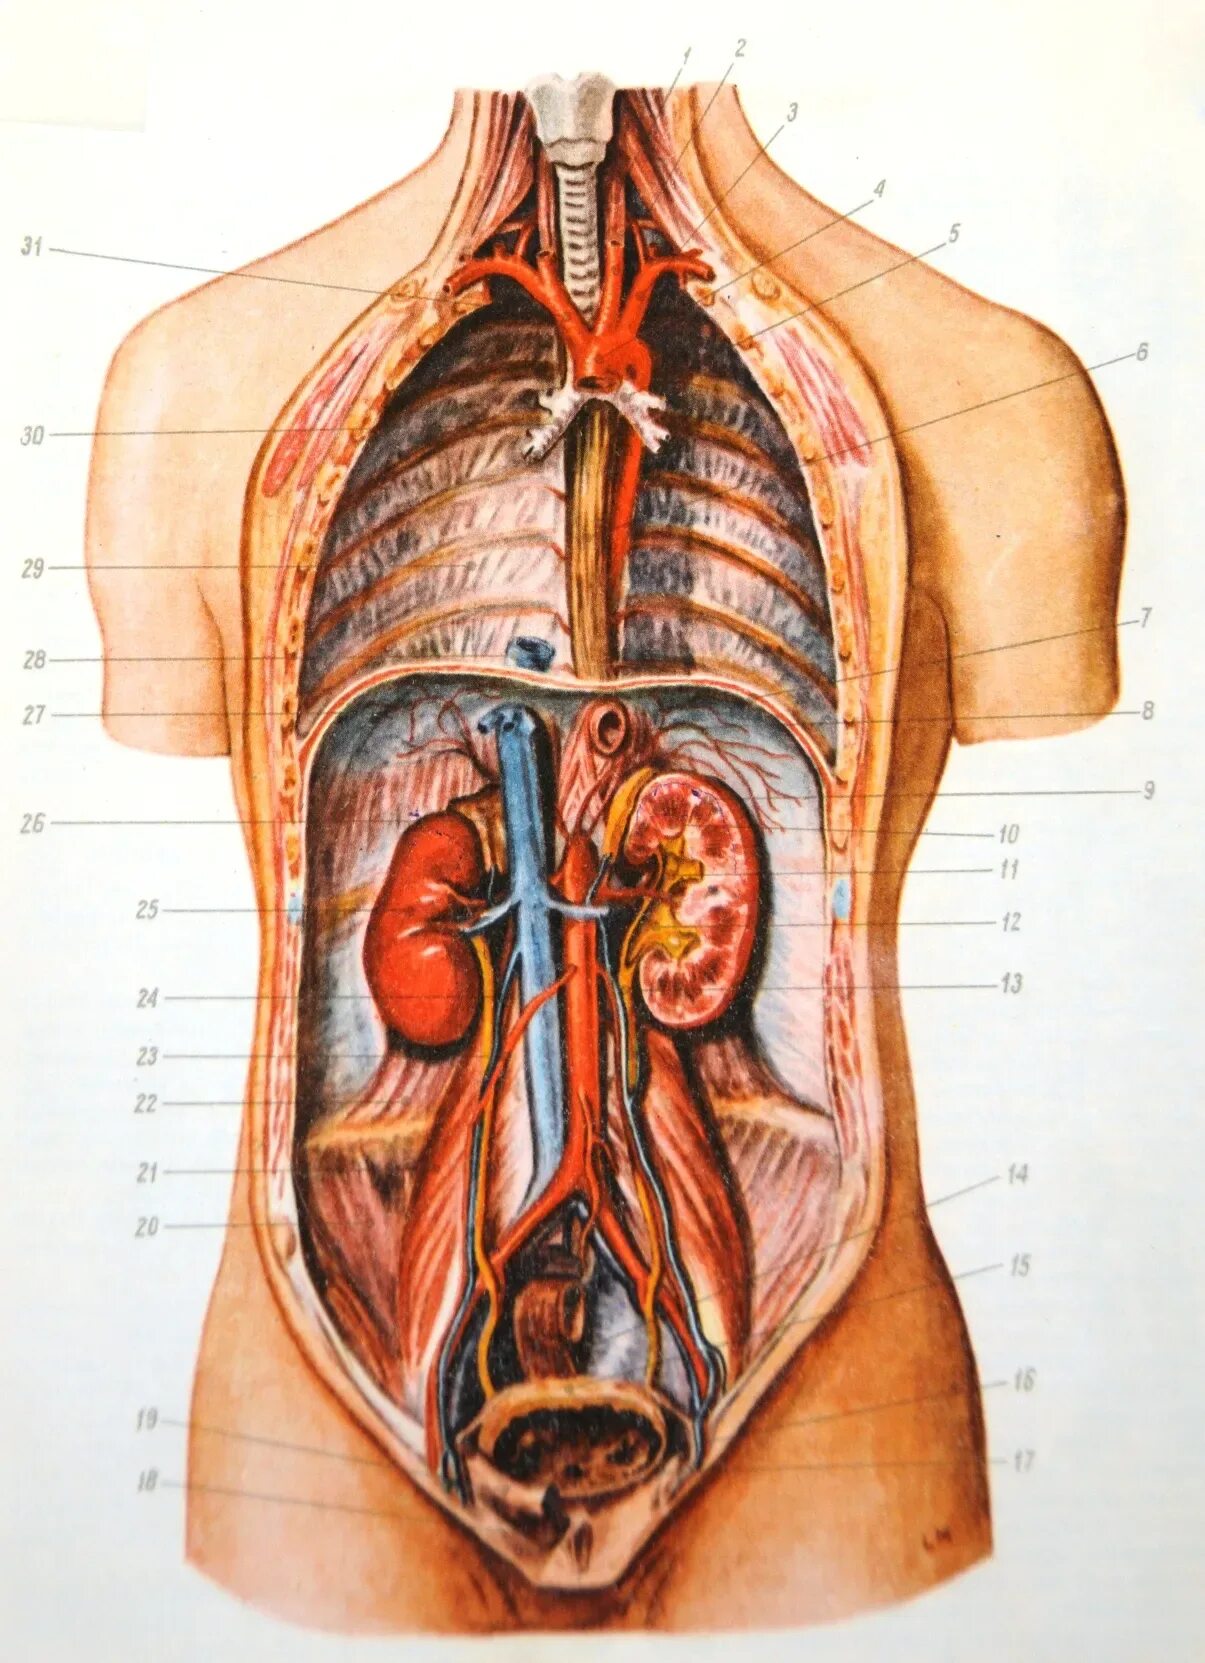 Анатомия человека внутренние органы. Анатомия человека в разрезе внутренние органы. Анатомия человека внутренние органы женщины. Органы грудной и брюшной полости человека. Фото анатомии человека женщин внутренних органов